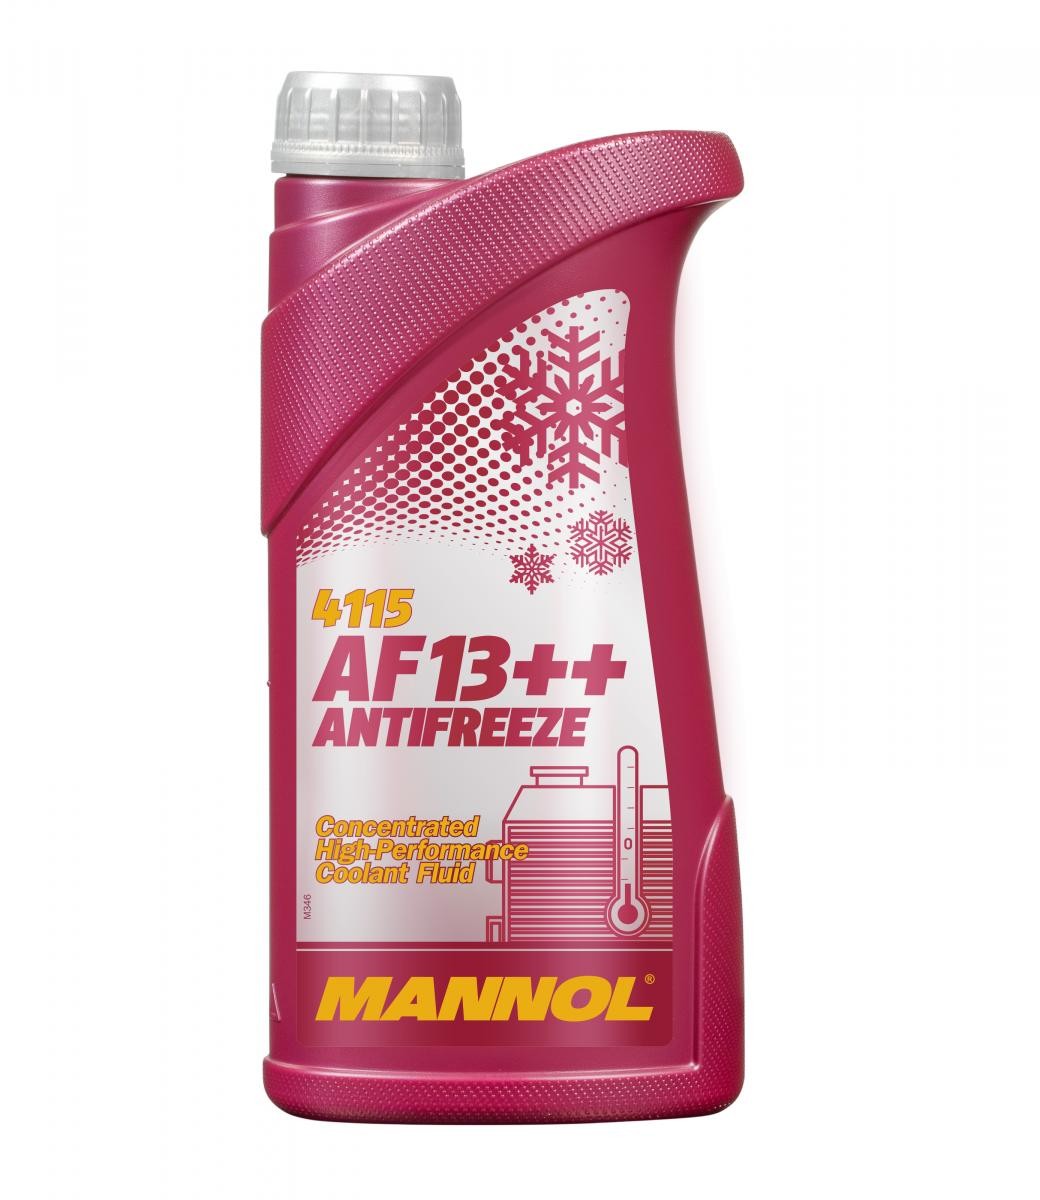 YAMAHA LIBERO Kühlmittel G12 Rot, 1l, -38(50/50) MANNOL AF13++, High-performance MN4115-1